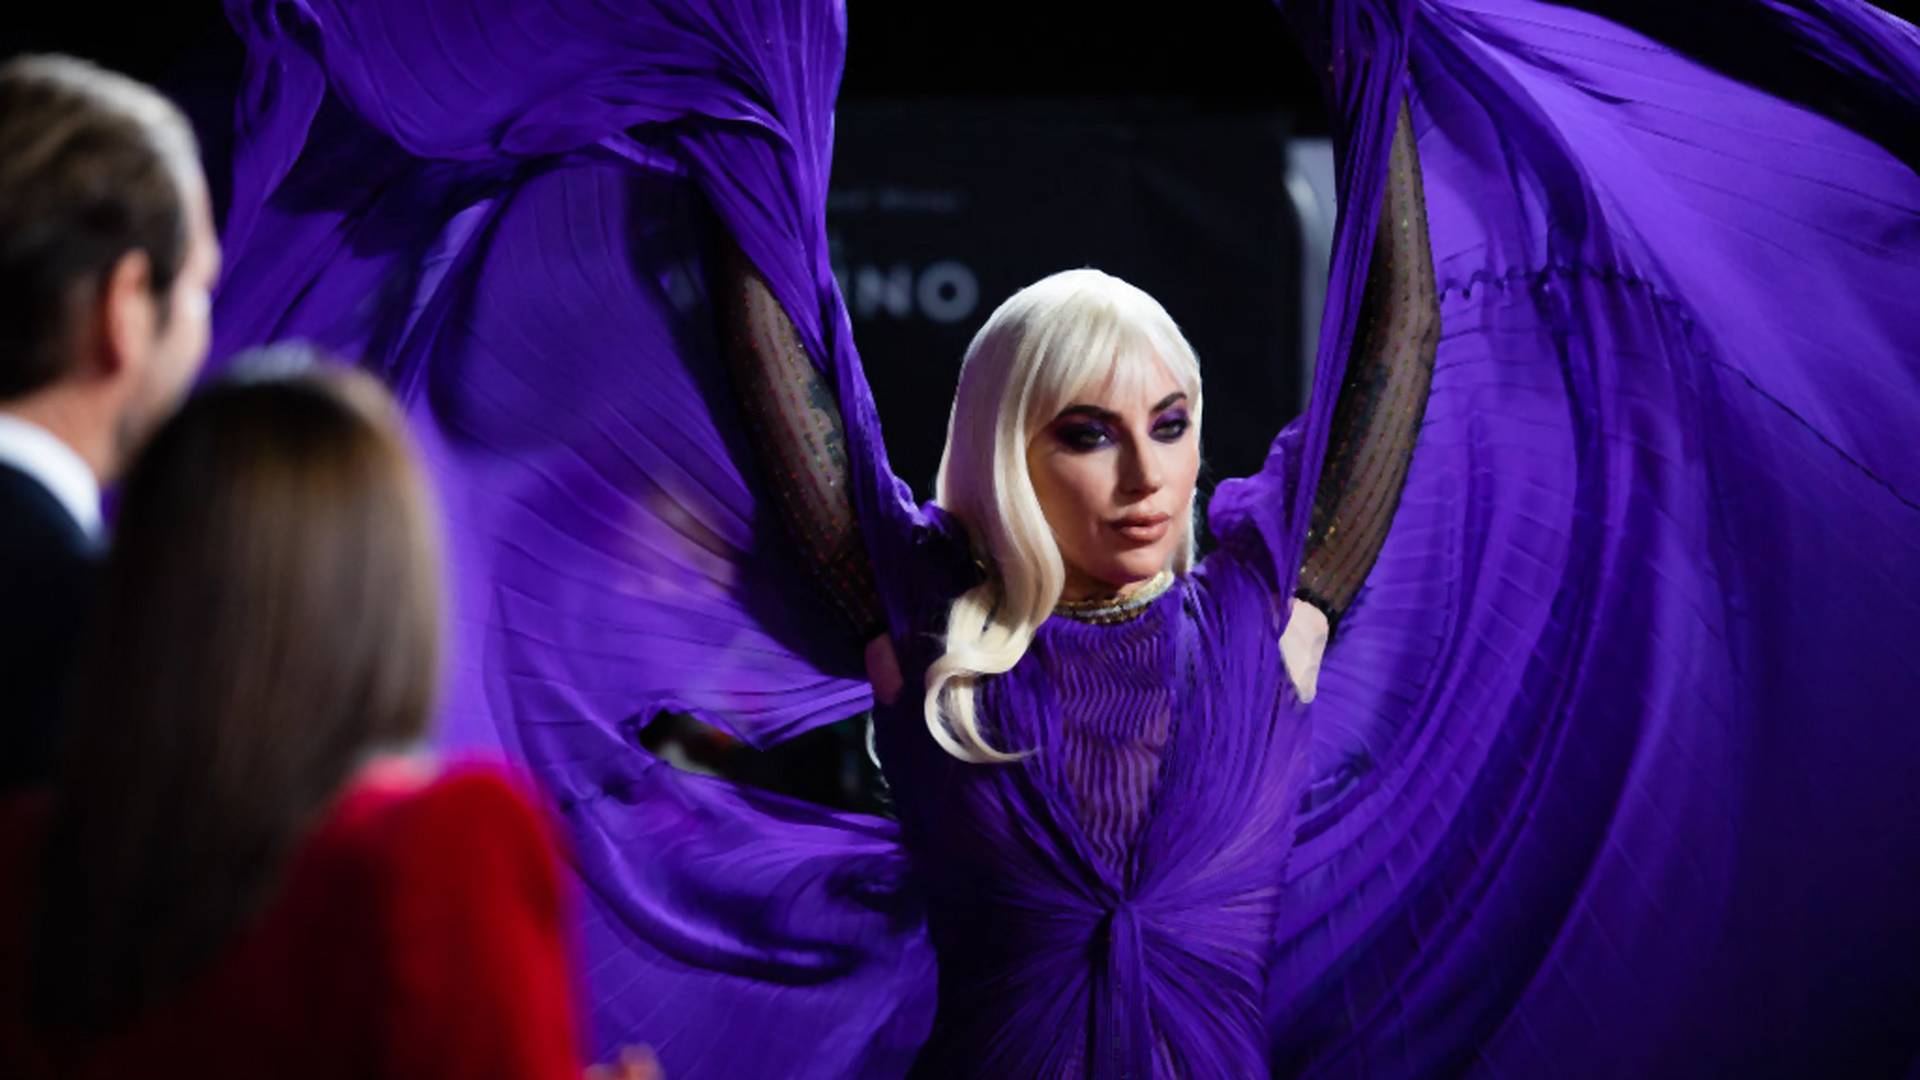 Olśniewająca Lady Gaga na światowej premierze filmu "House of Gucci" [GALERIA] 